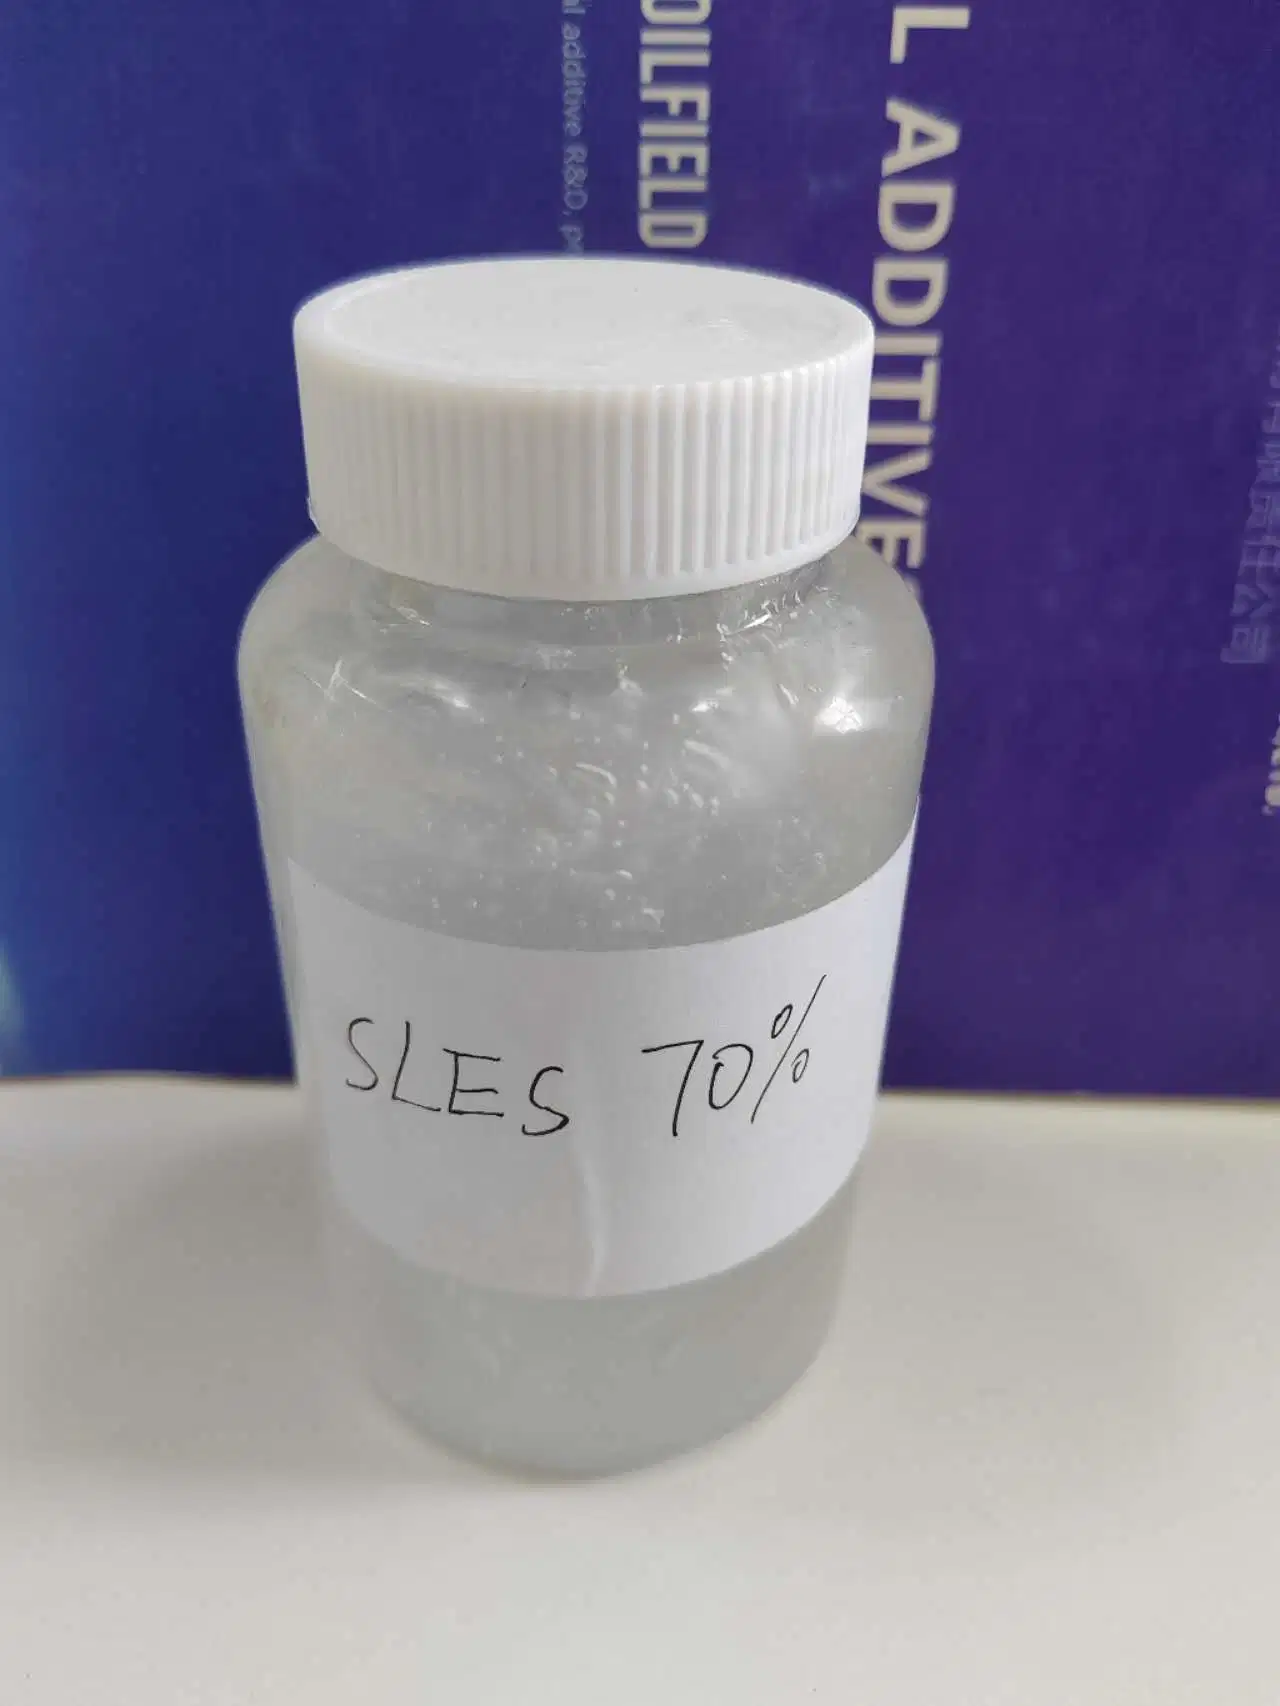 SLES 70% sodium Lauryl Ether sulfate pour détergent cosmétique production